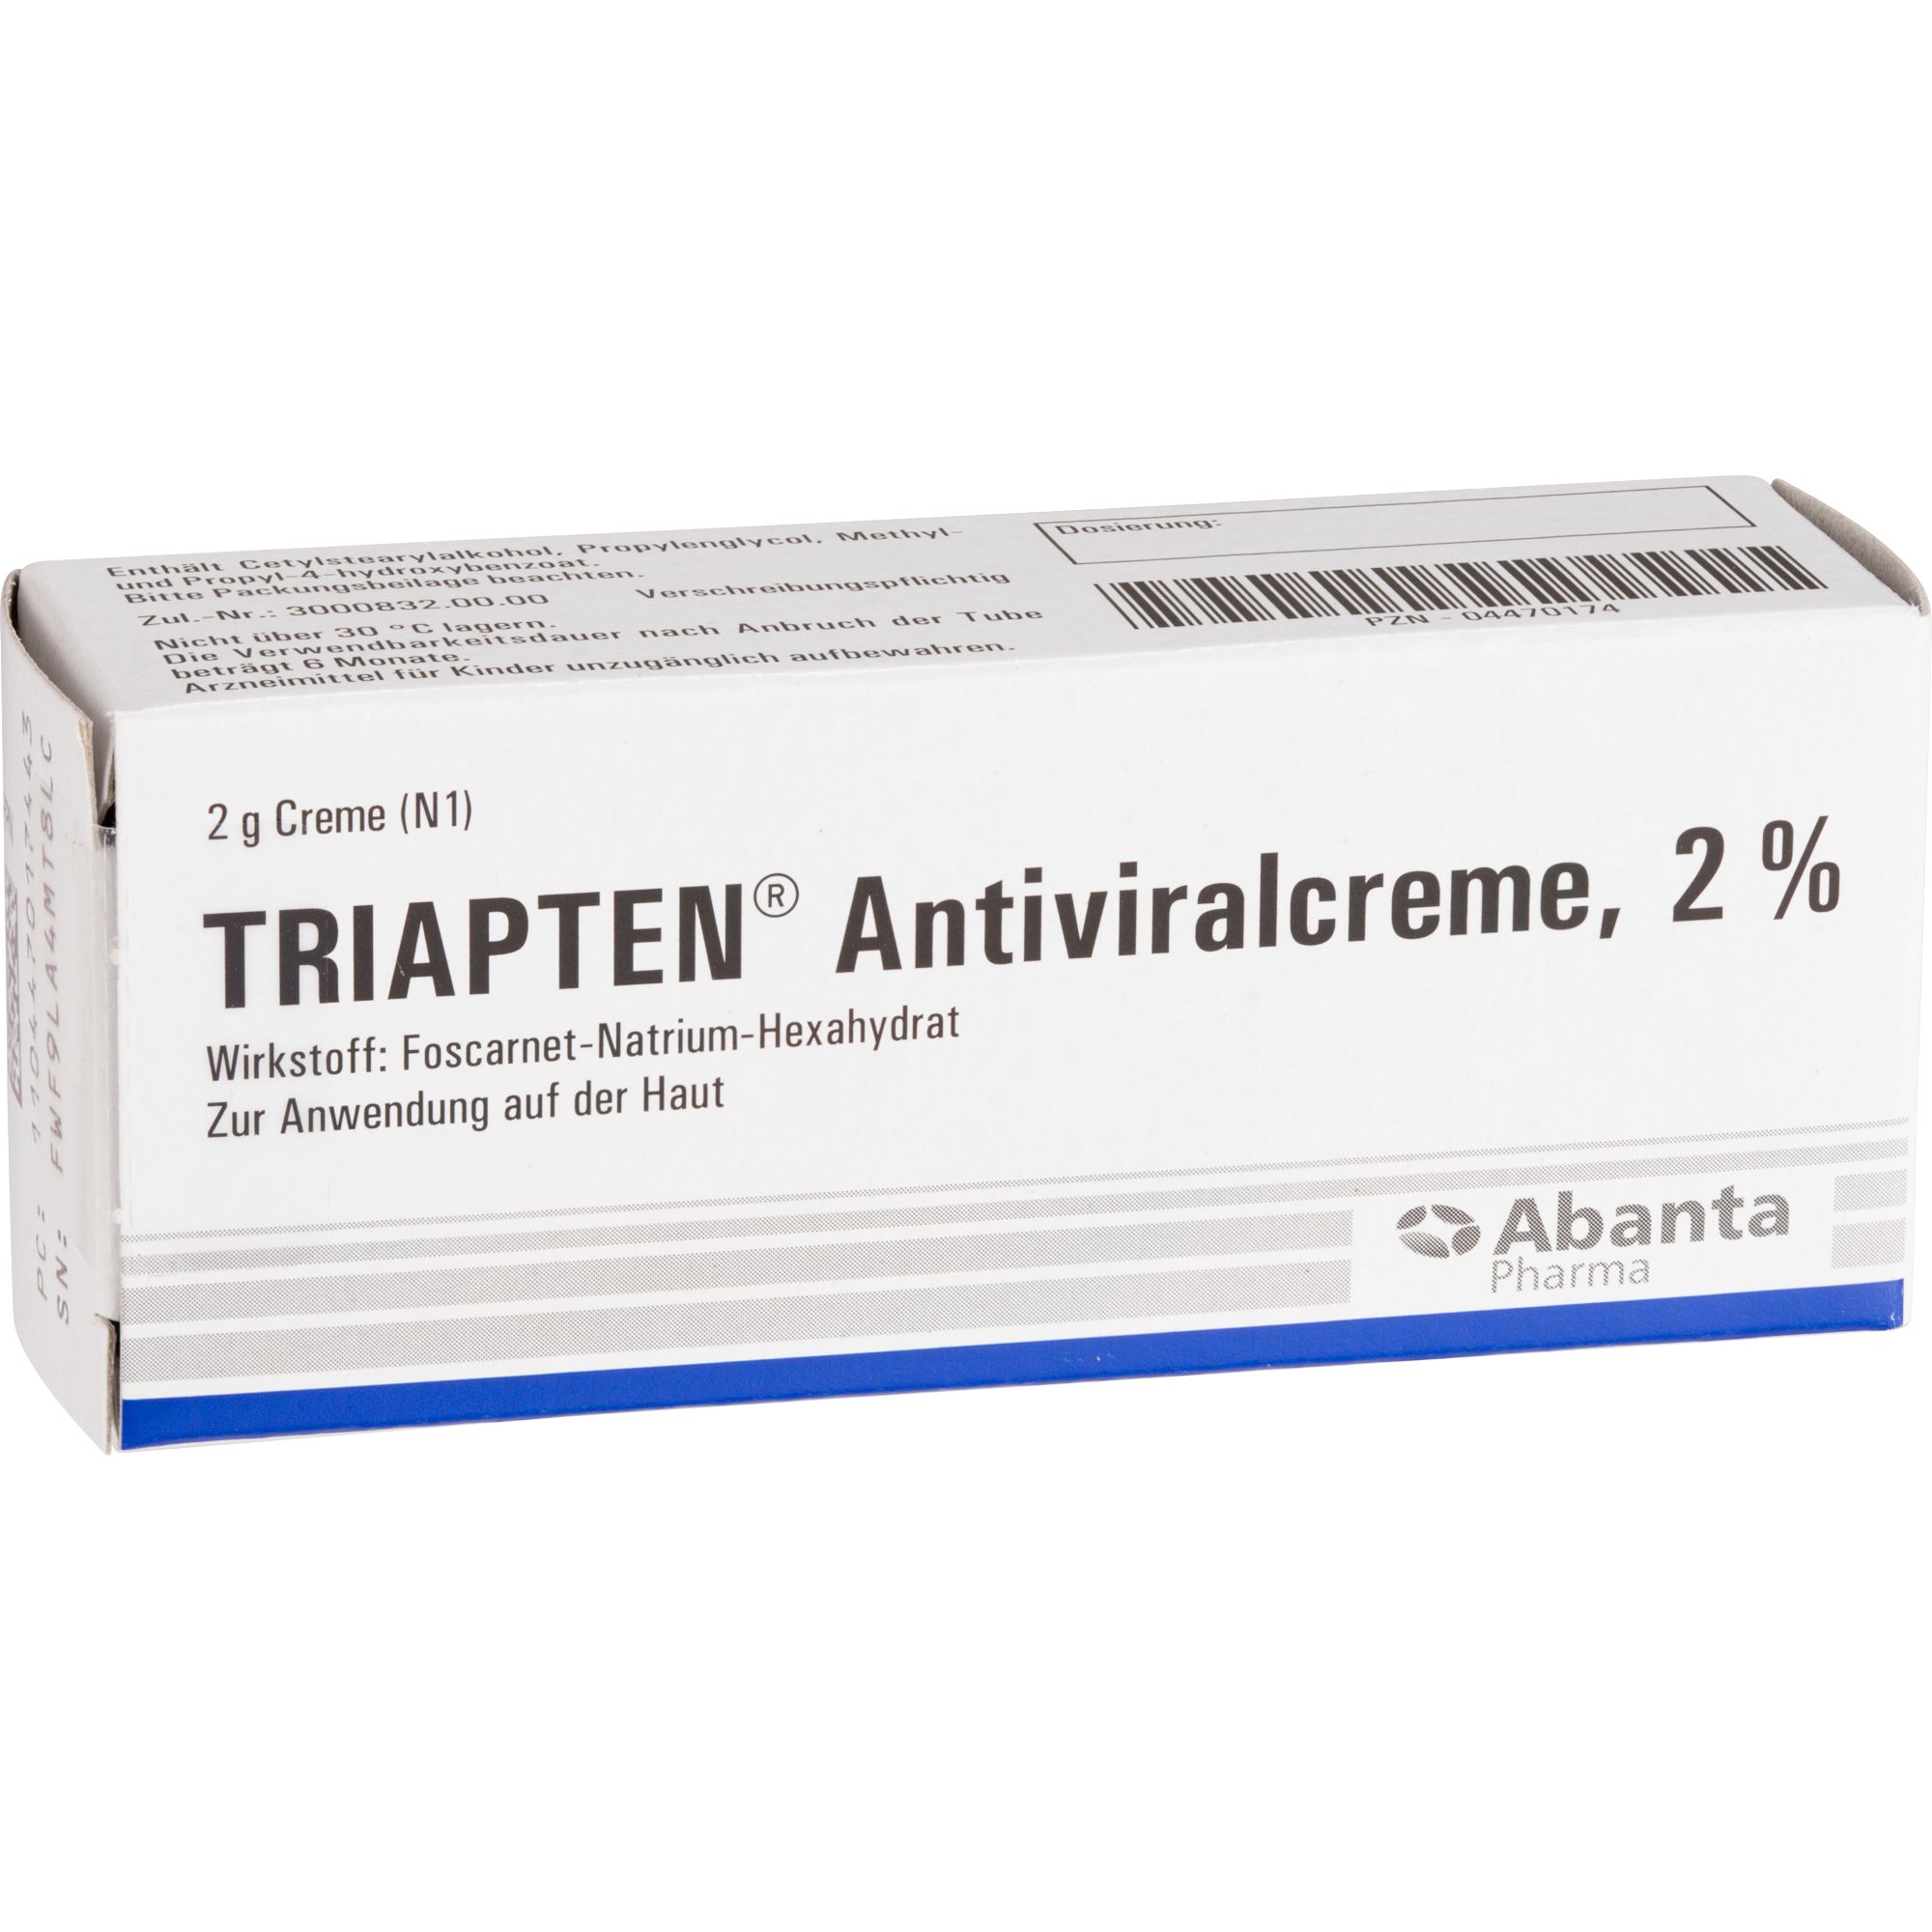 Triapten® Antiviralcreme 